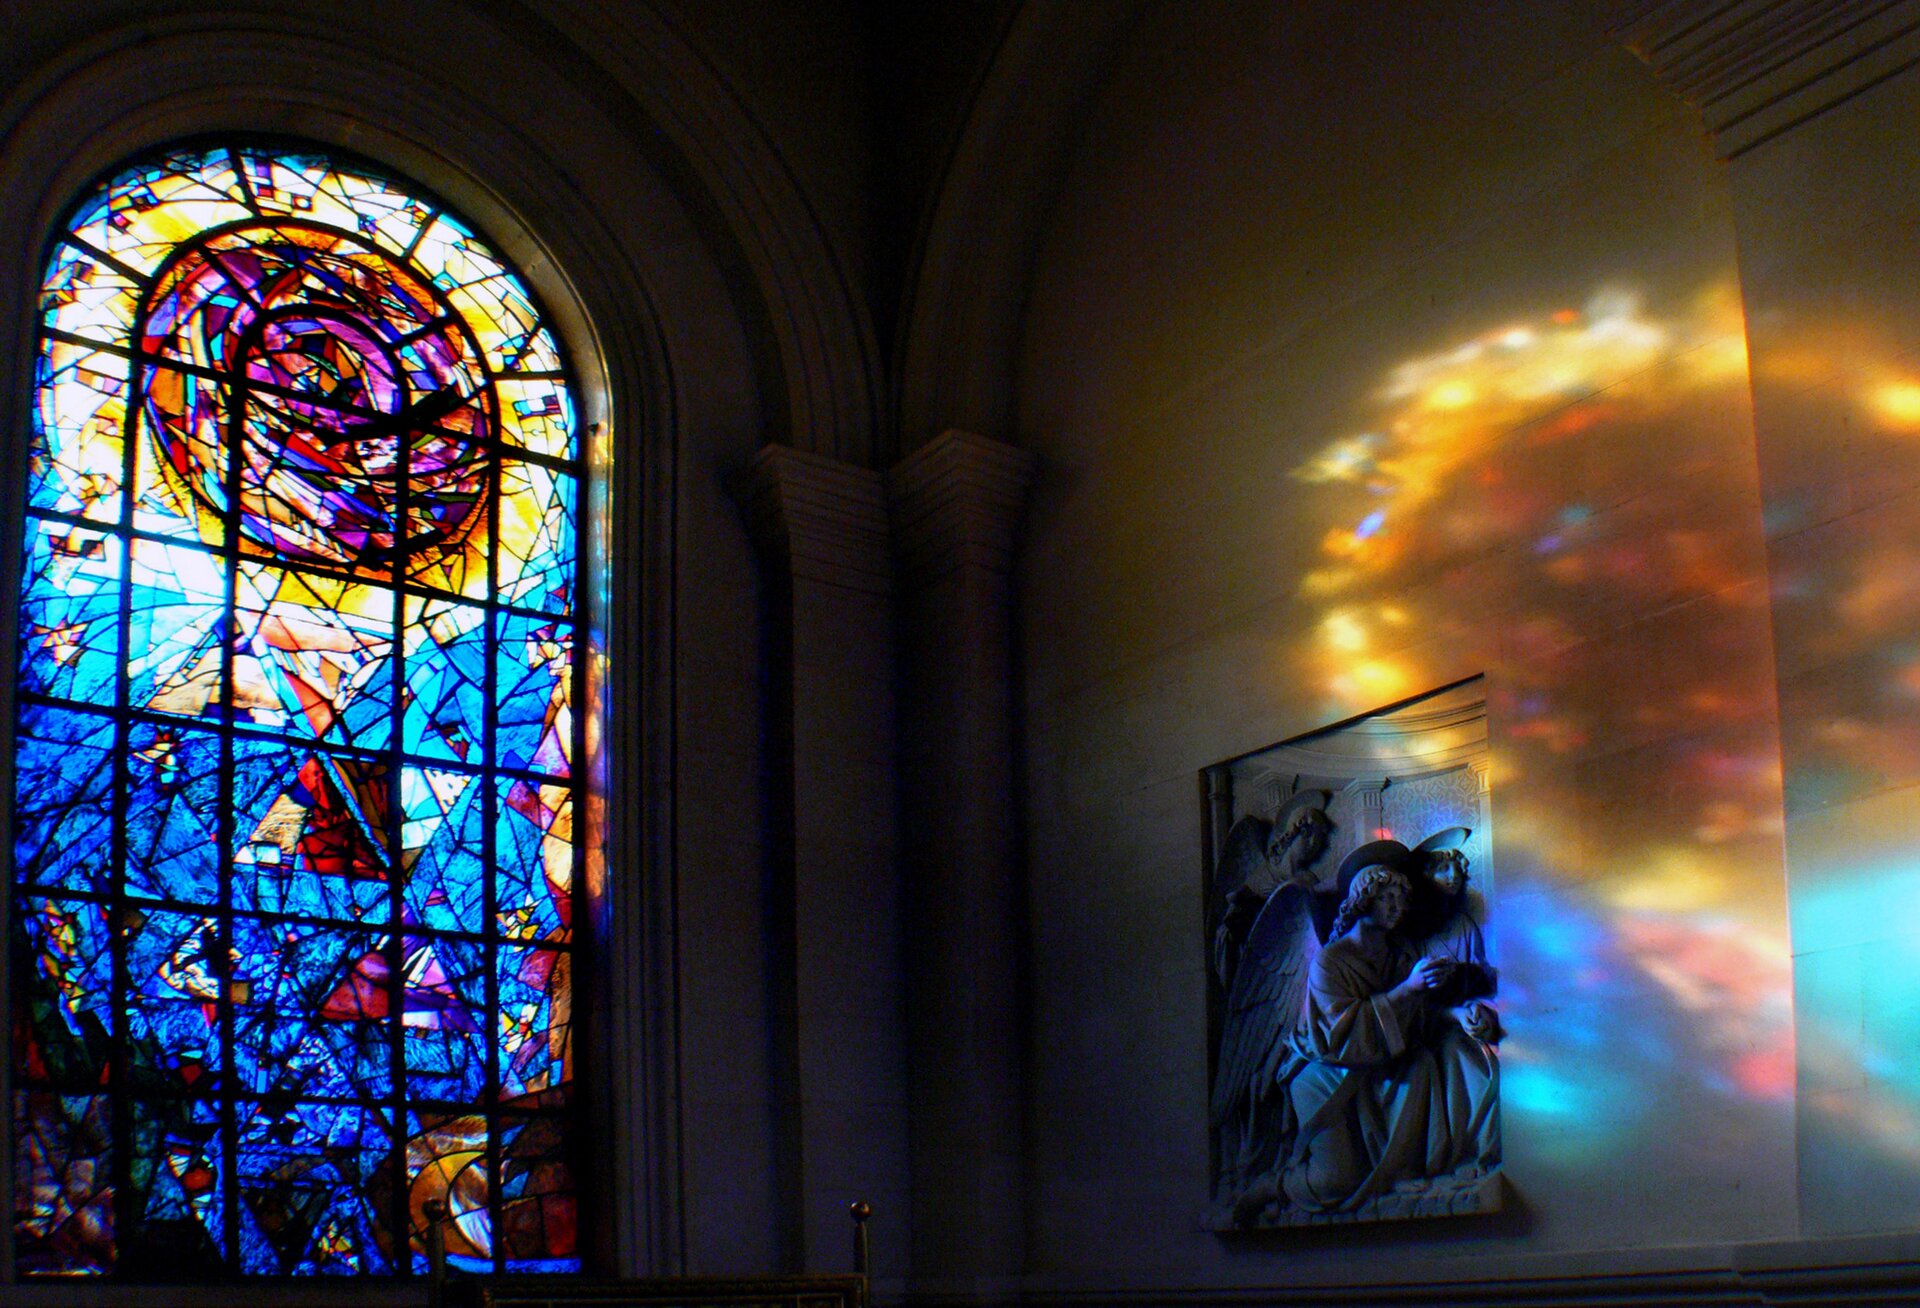 Ilustracja przedstawia witraż w kościele w Christchurch w Nowej Zelandii,. Ukazuje fotografię z widokiem na półokrągłe okno wypełnione w dolnej części niebieskimi szkiełkami, a w górnej okręgiem w ciepłych barwach. Kolorowe światło odbija się na ścianie z płaskorzeźbą.